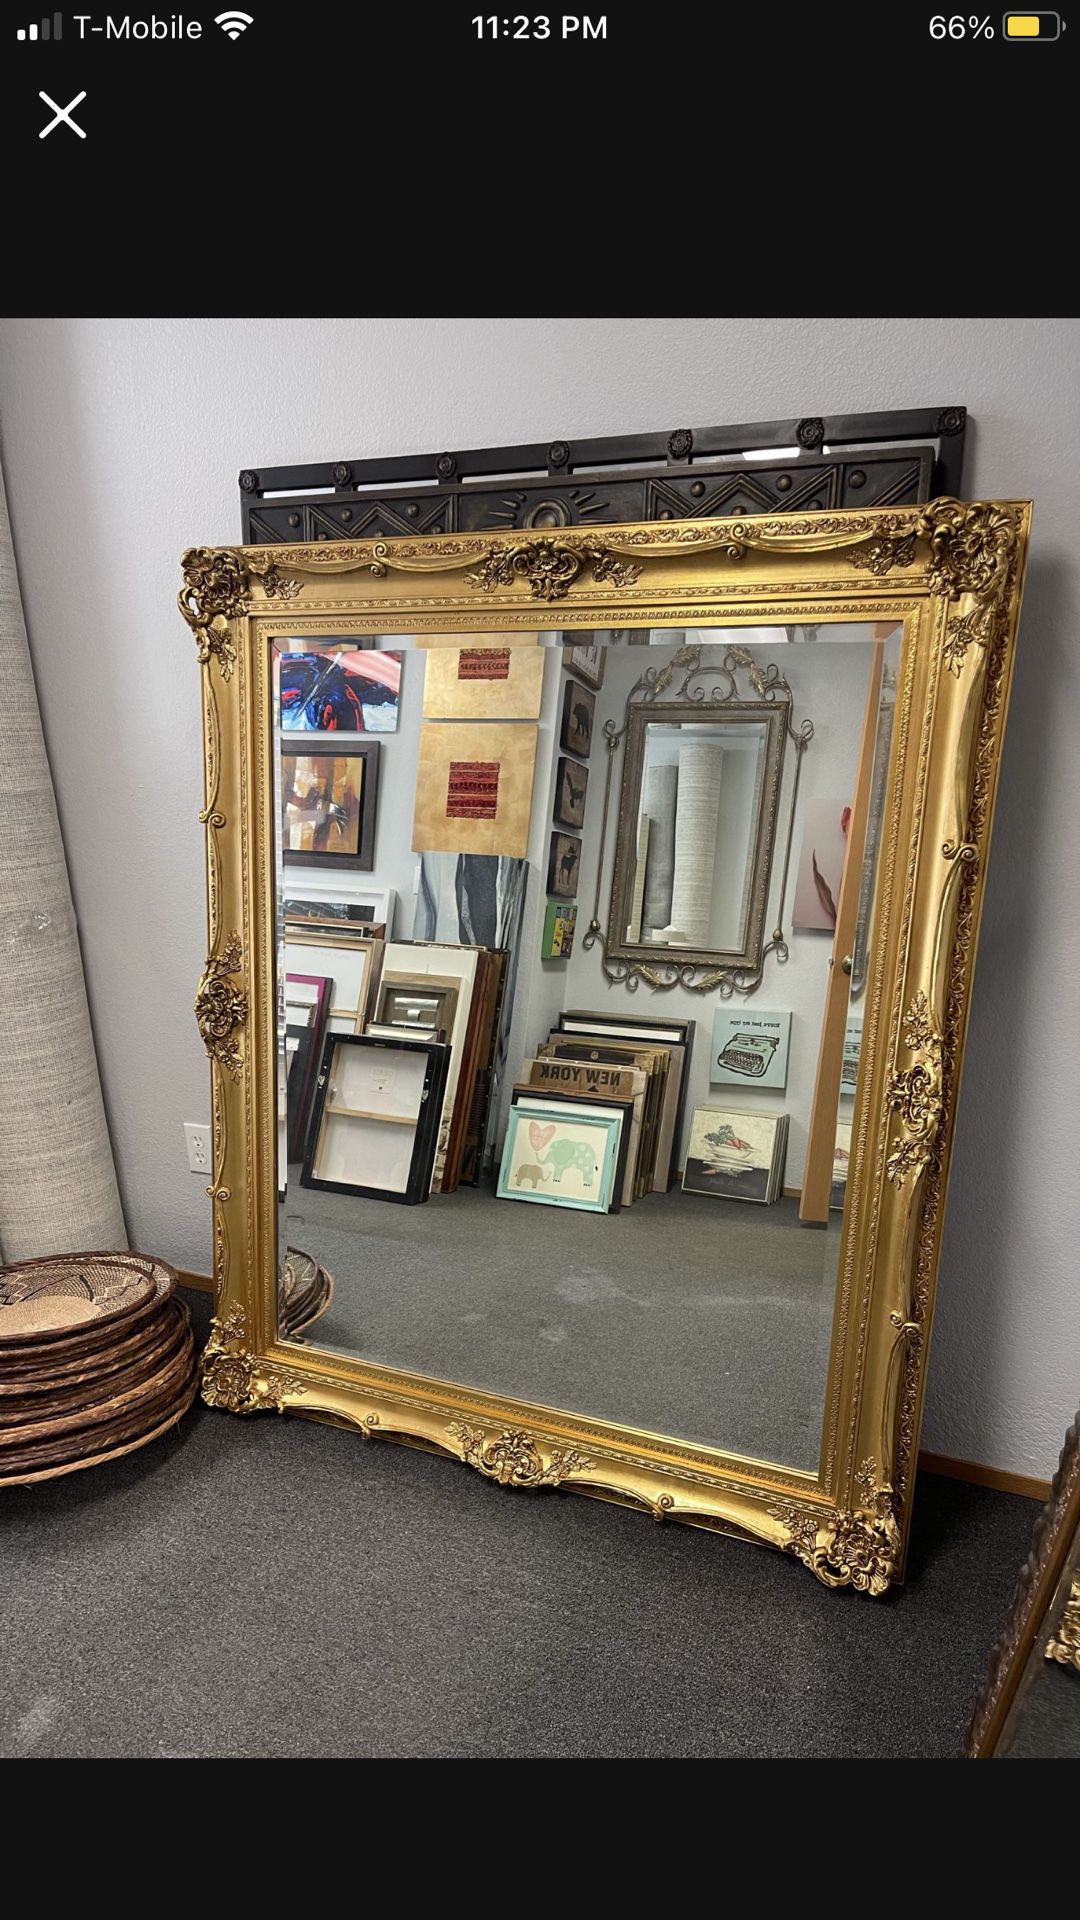 Large Antique Gold Framed Mirror 